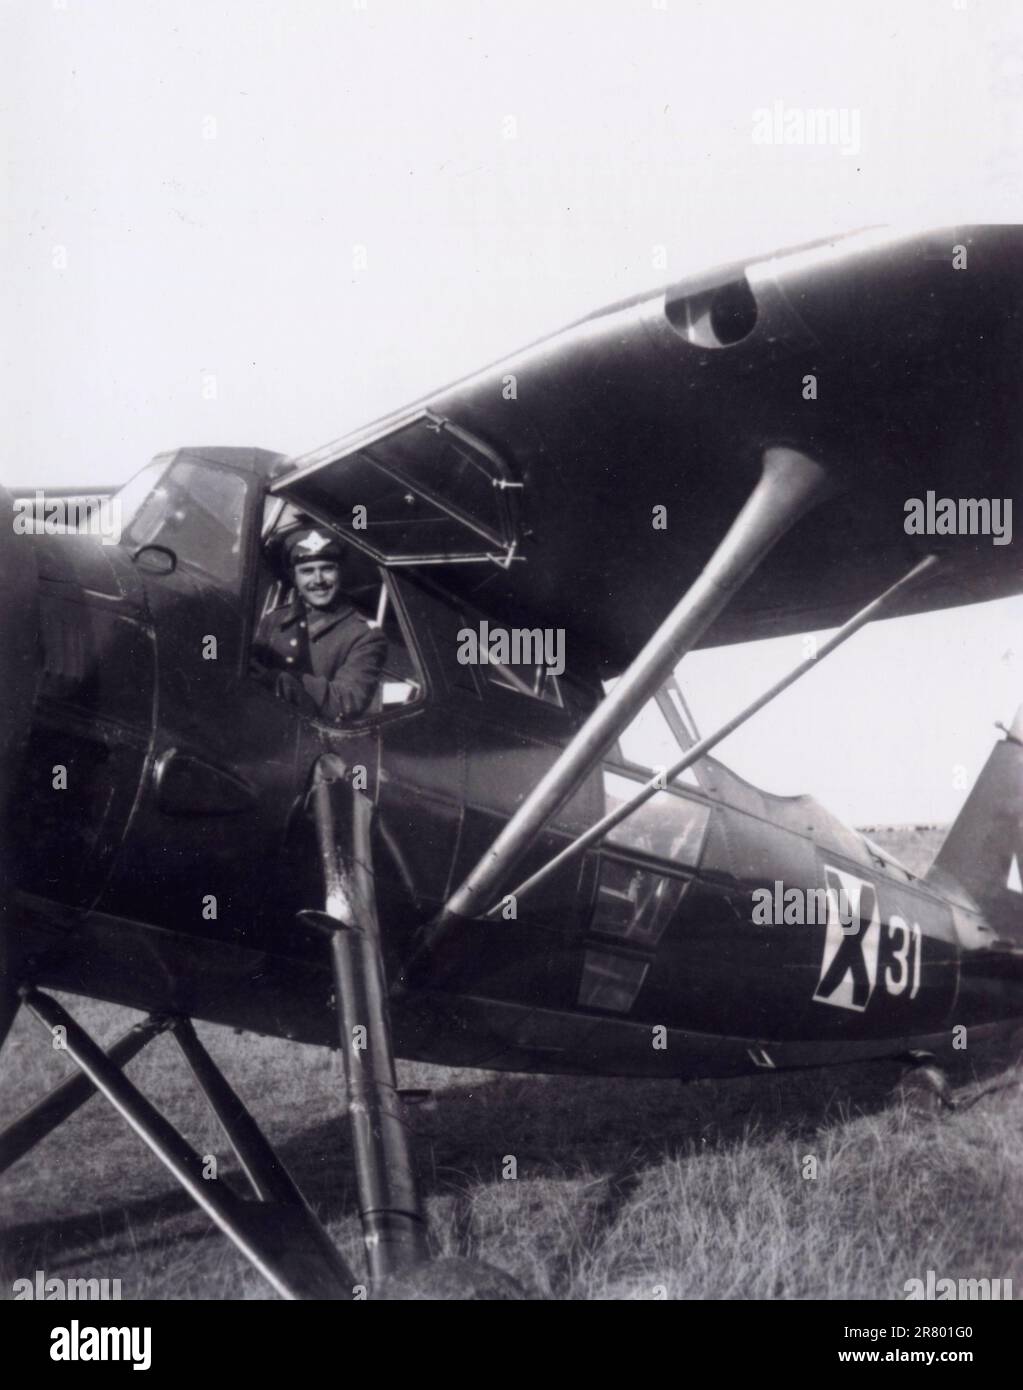 Italian aircraft Caproni KB.11 Bulgara aka Kaproni Bulgarski Fazan, Bulgaria 1940s Stock Photo